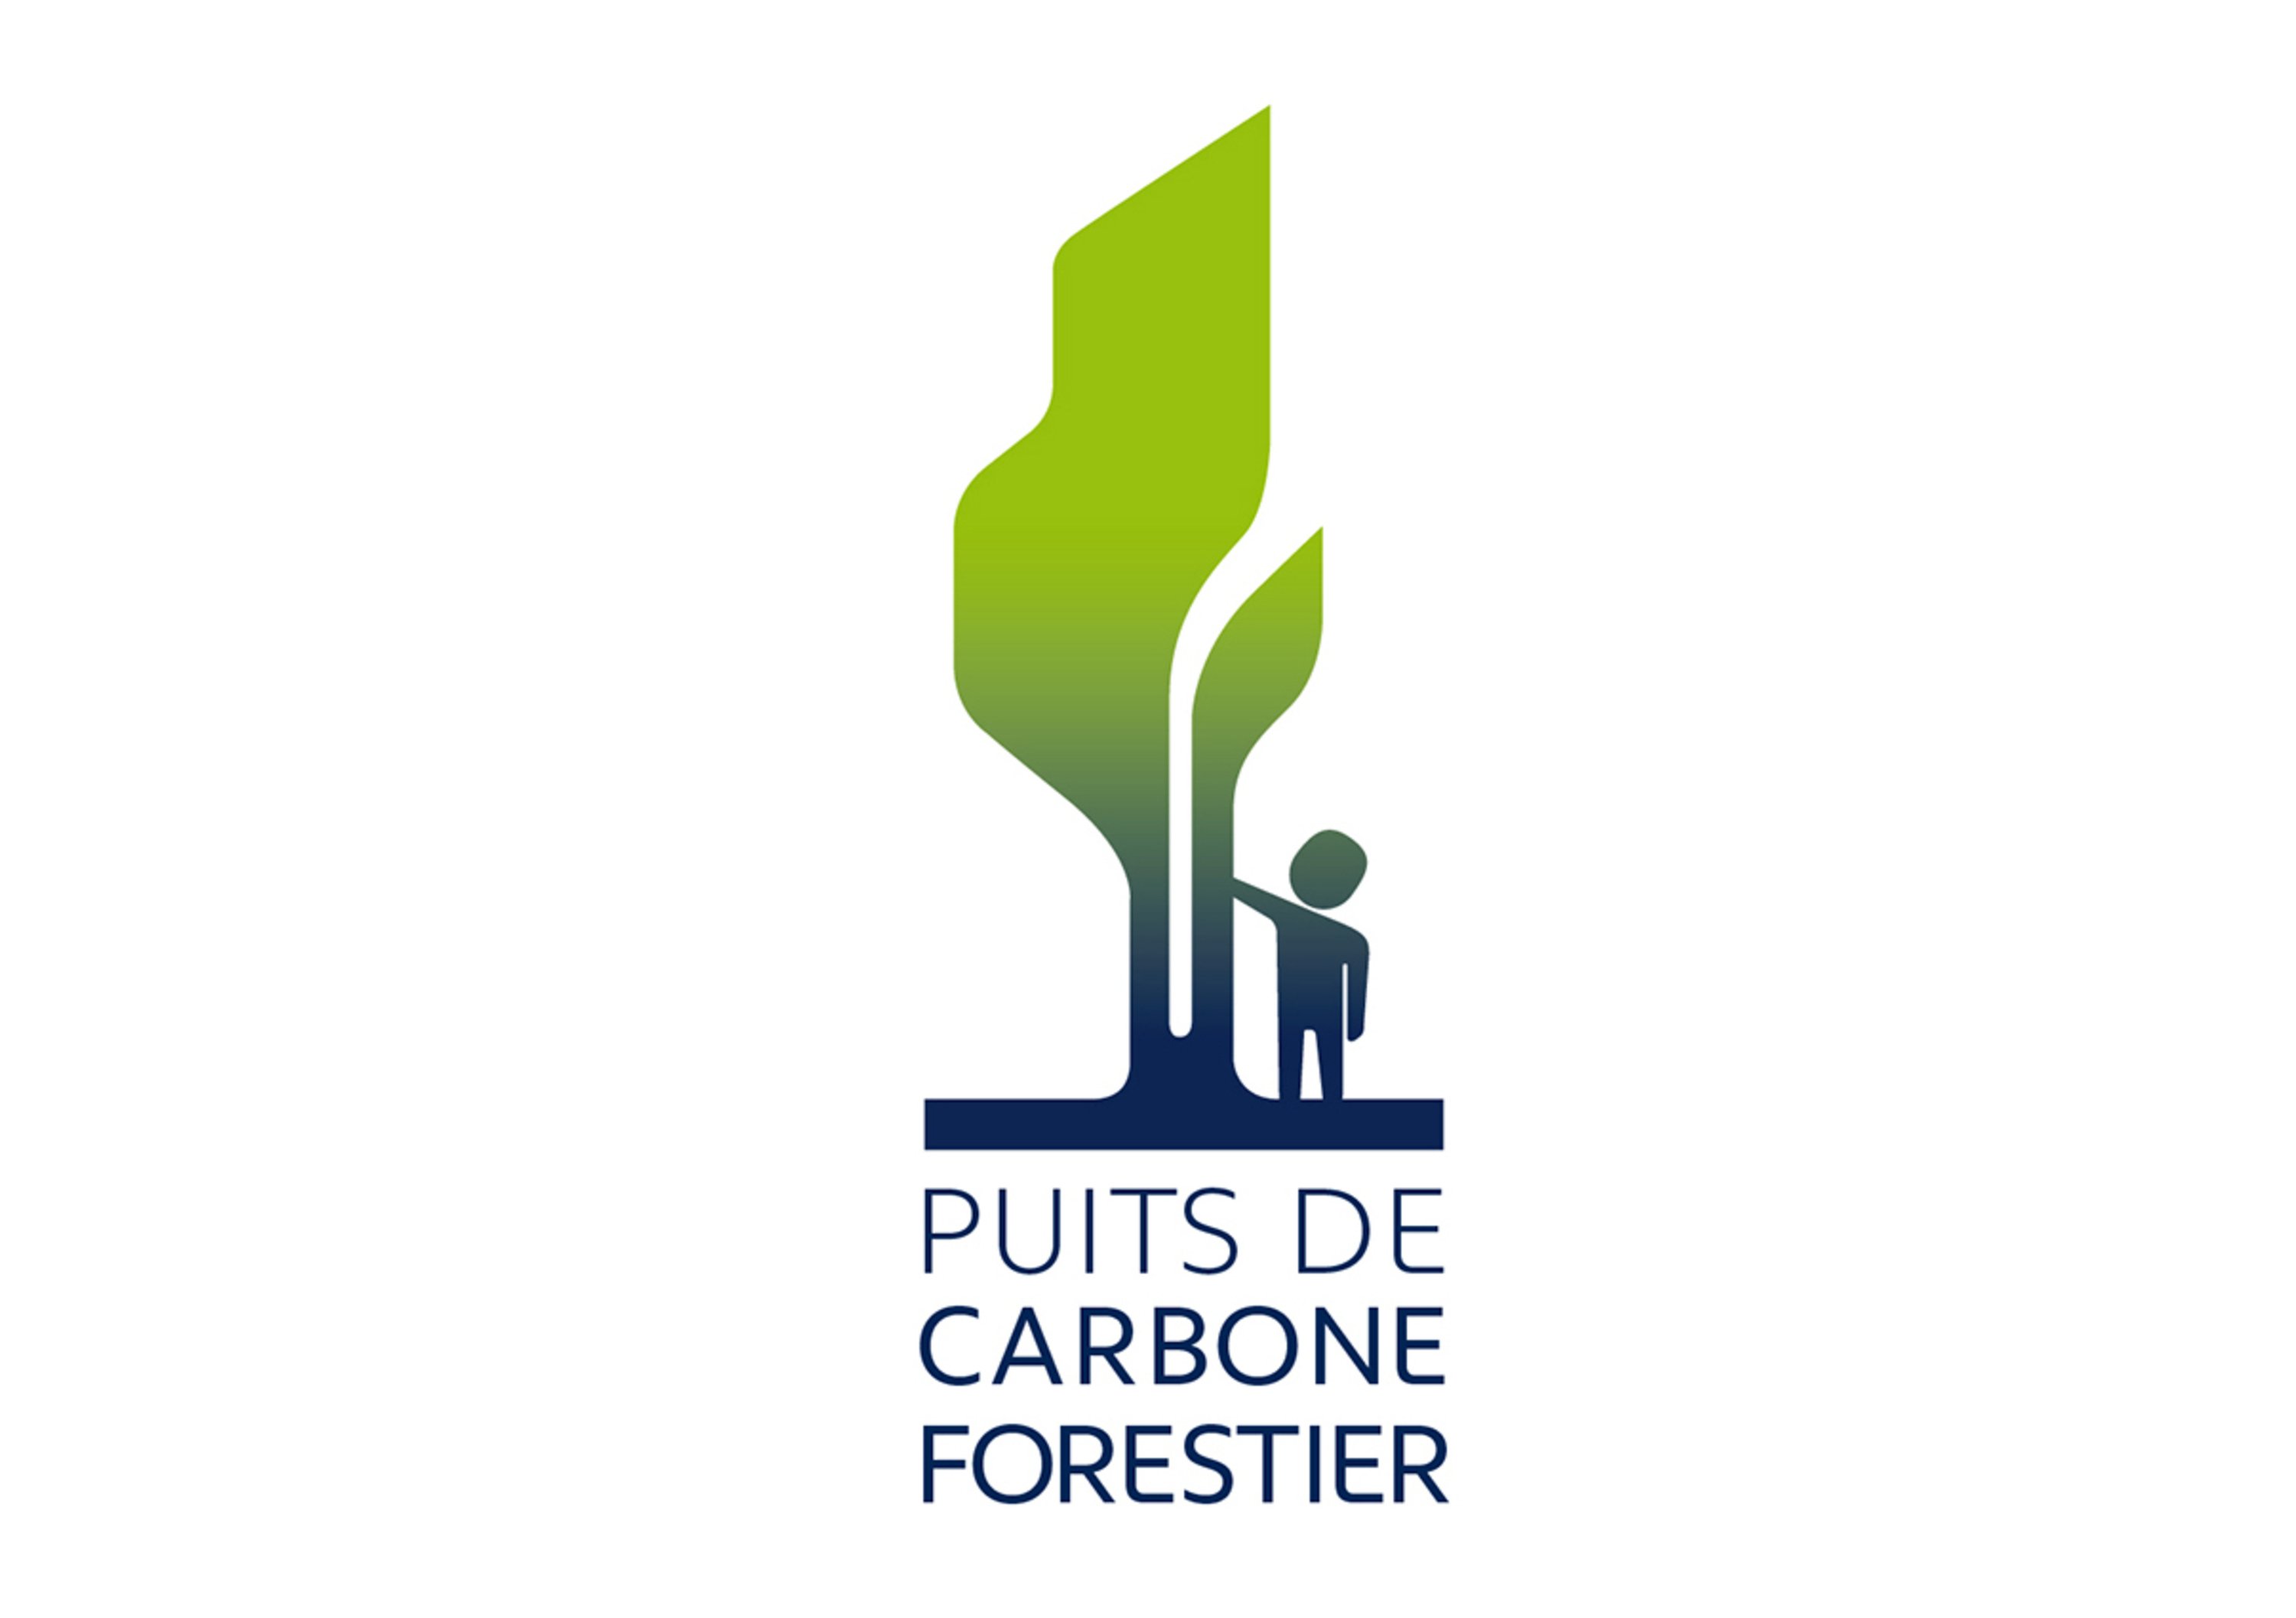 Peugeot-ONF: in Amazzonia un Pozzo di carbonio forestale